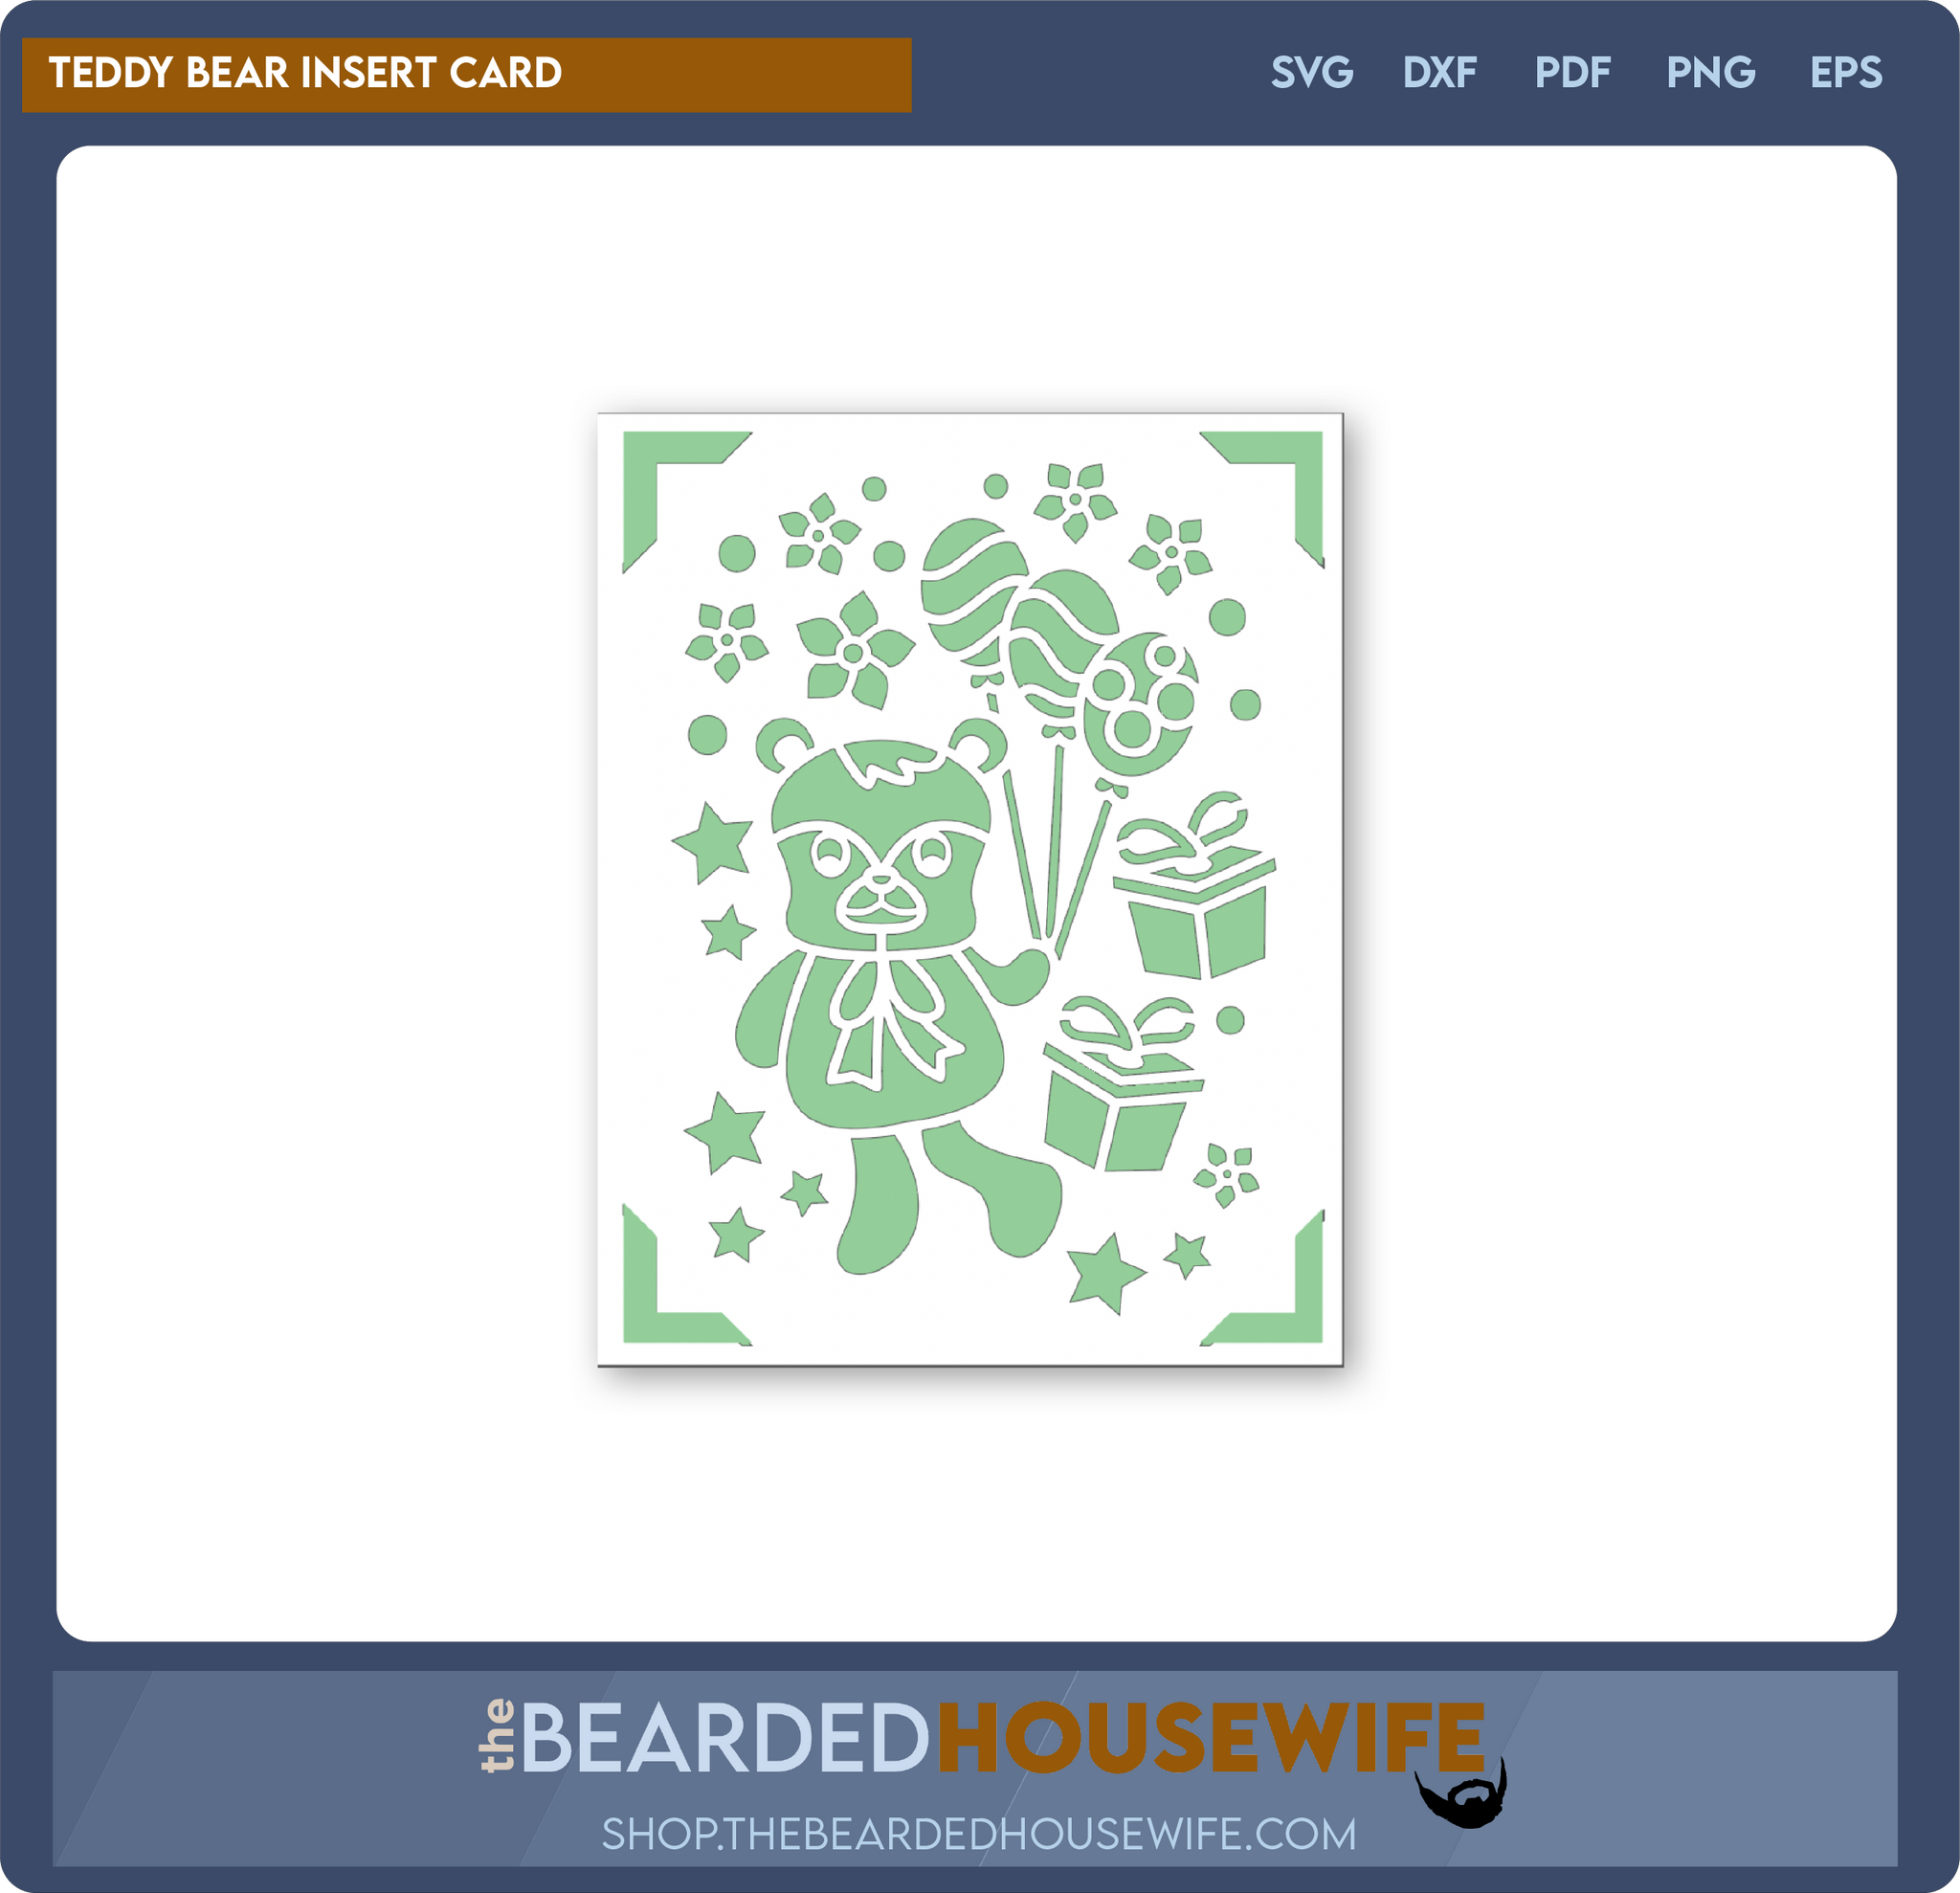 teddy bear insert card